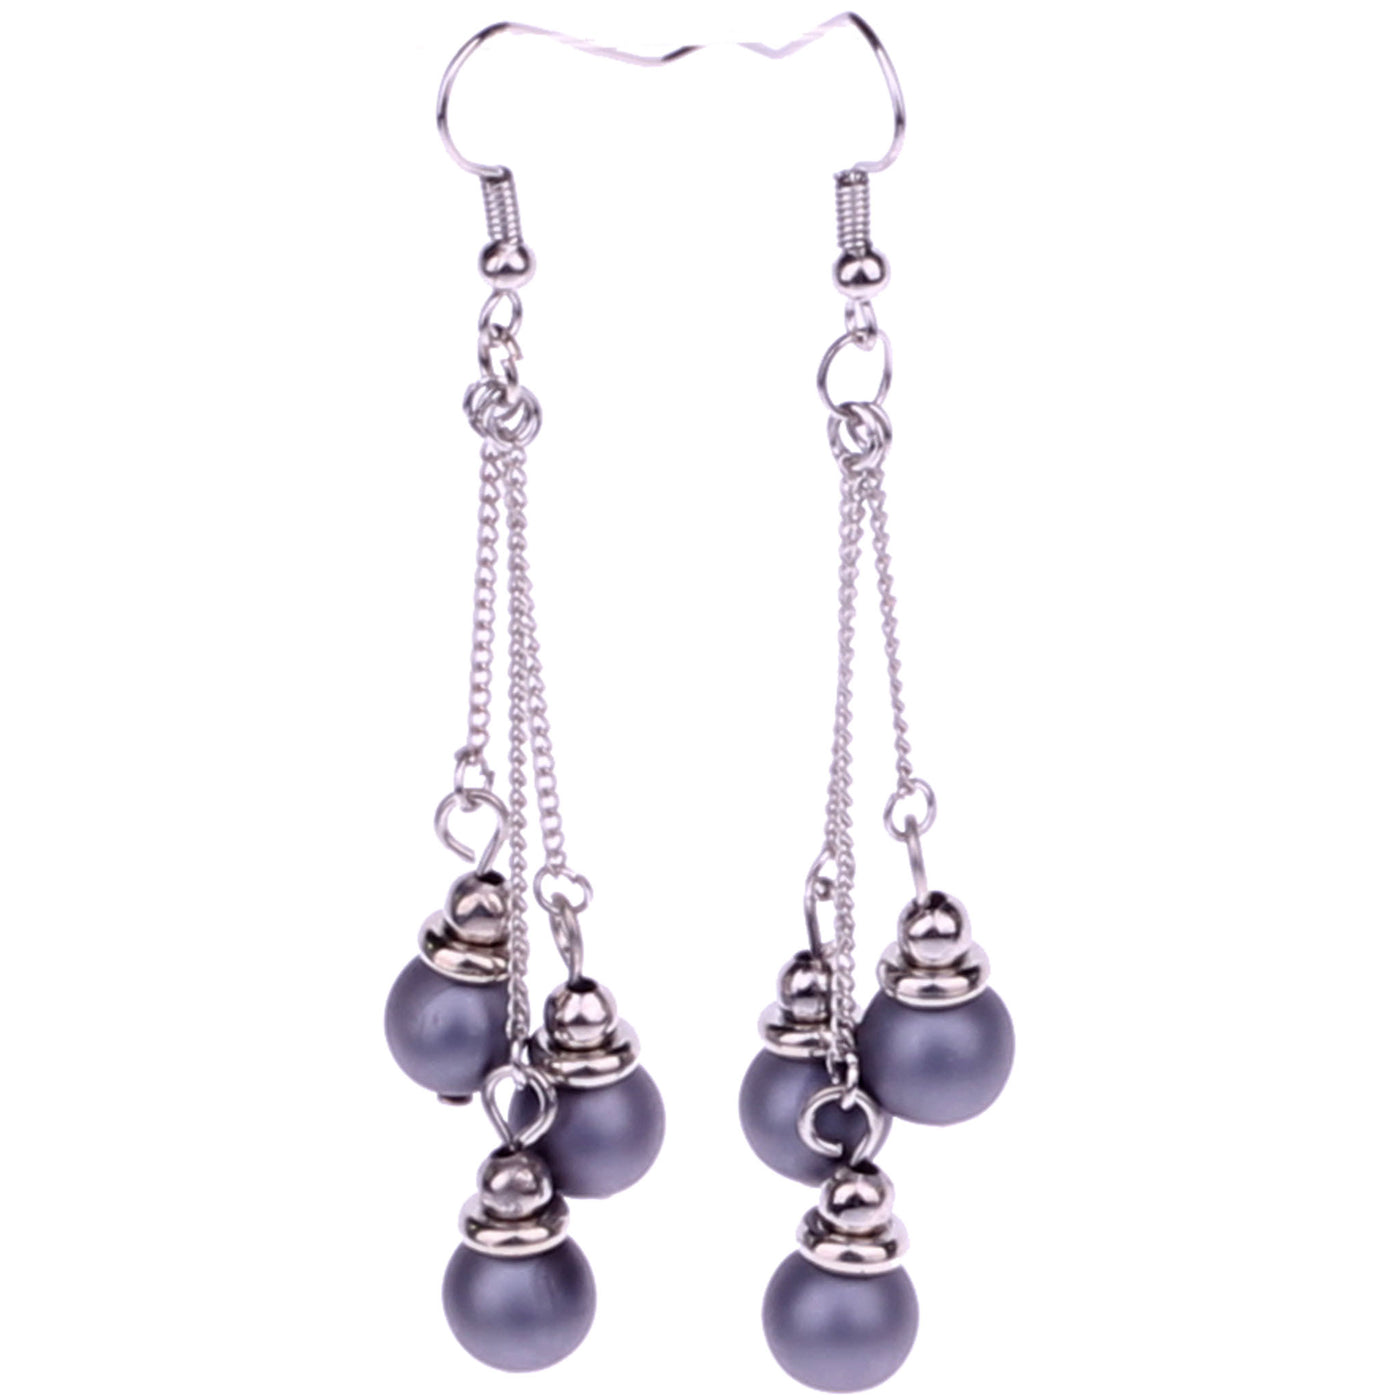 Dangling pearl earring